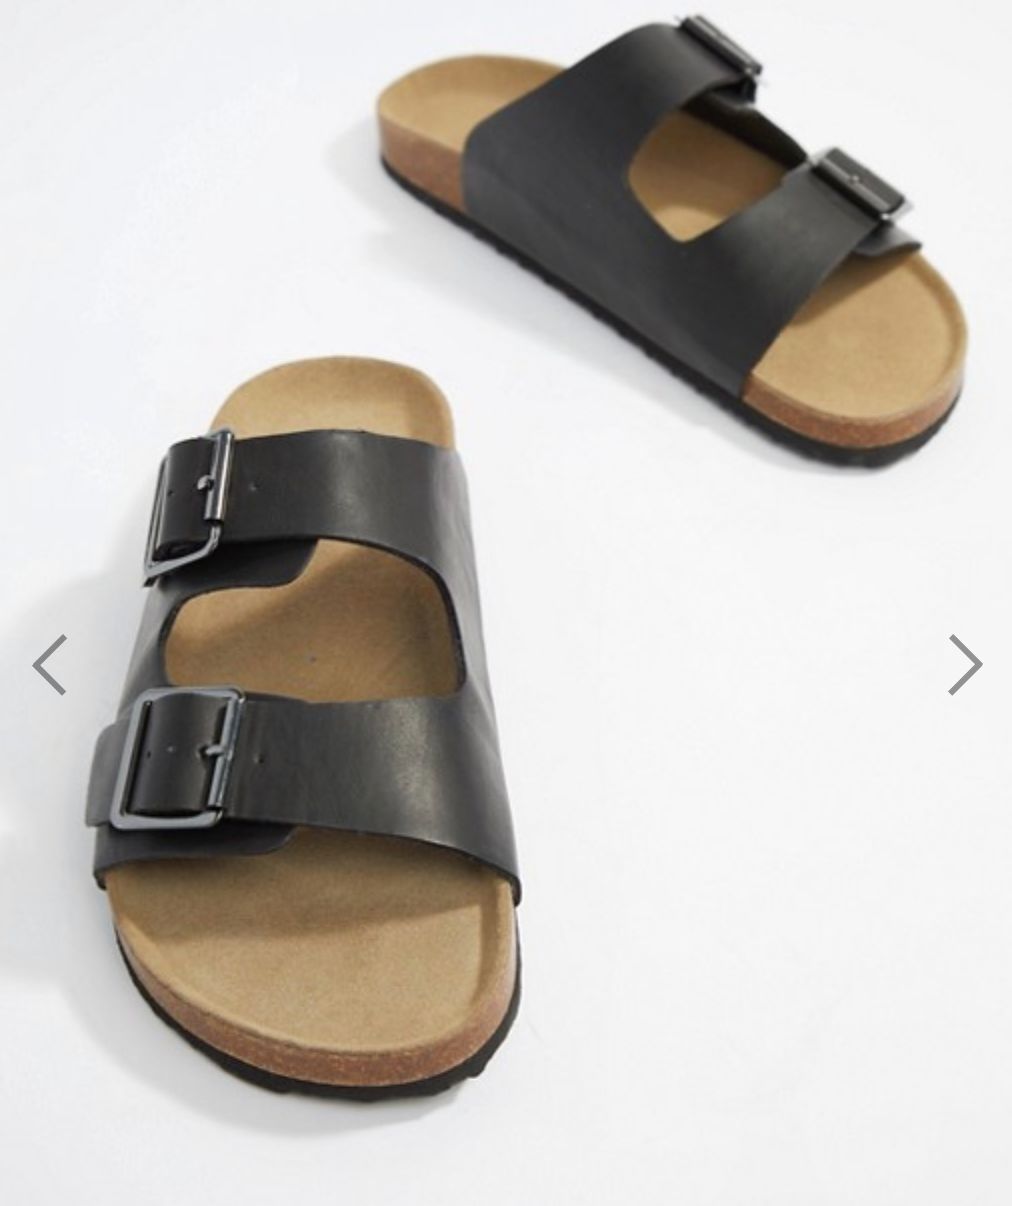 birkenstock look alike sandals